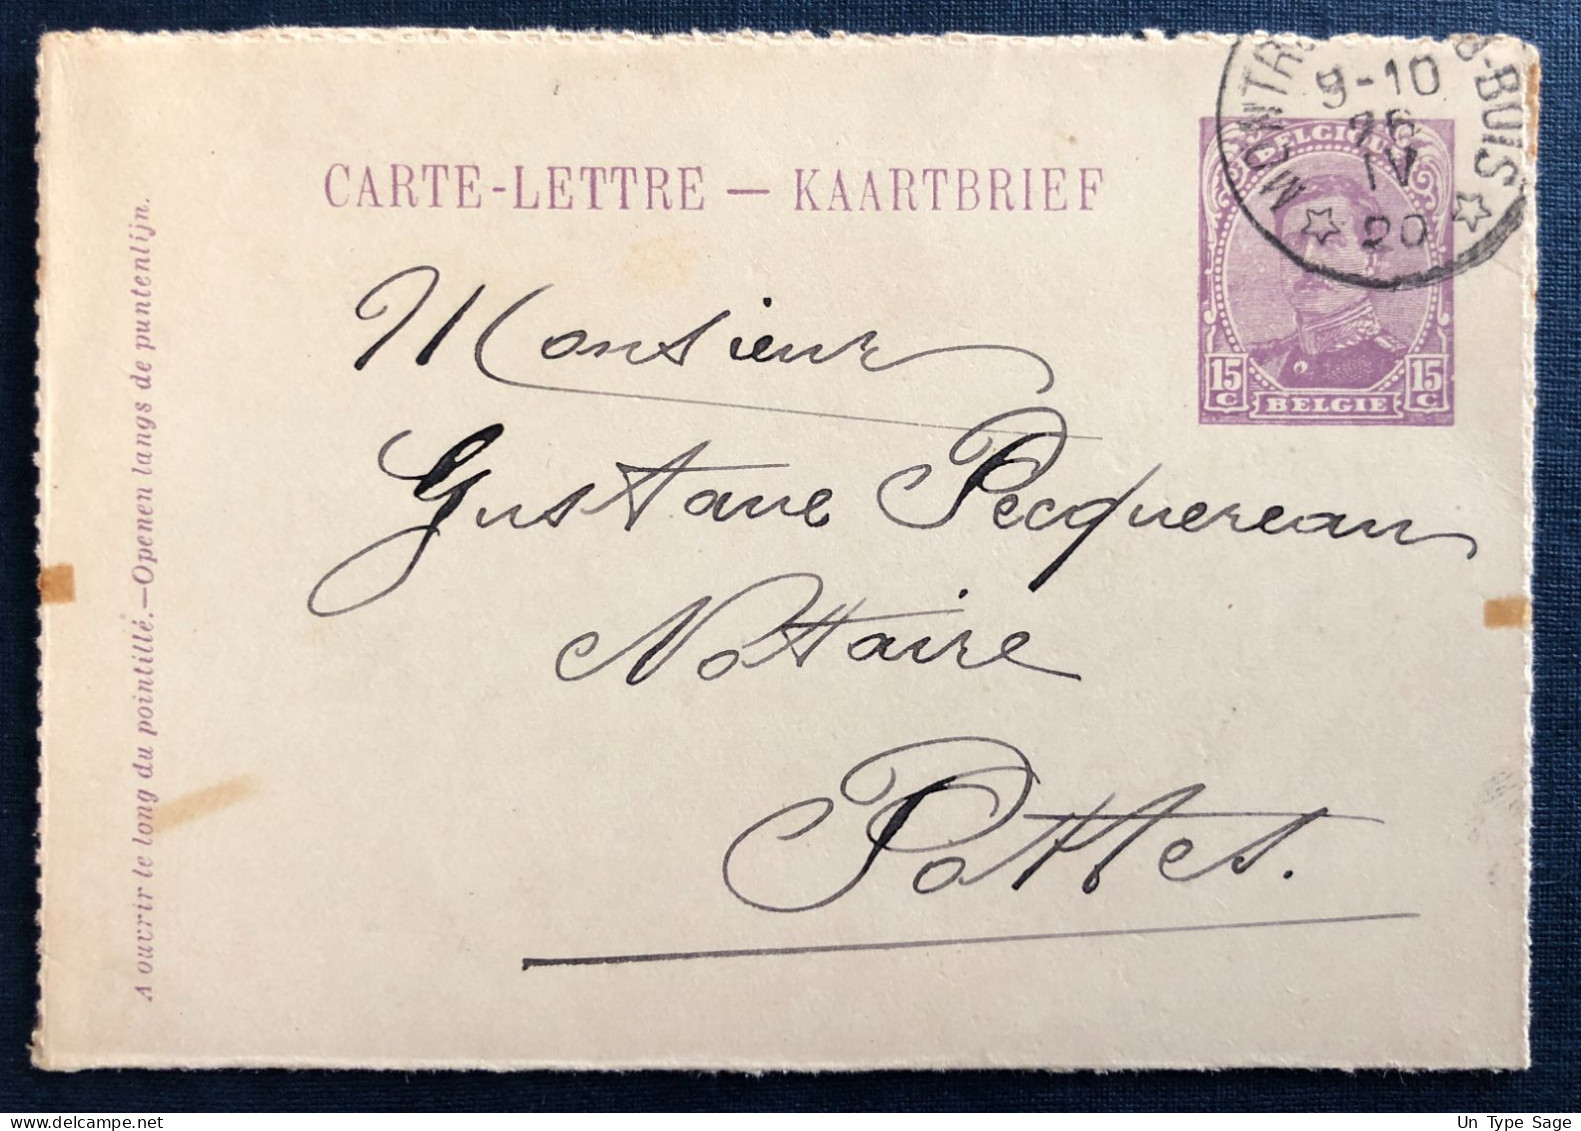 Belgique, Cachet Relais (étoile) Montrœul-au-Bois 26.IV.1920 Sur Entier Carte-lettre - (N769) - Cachets à étoiles